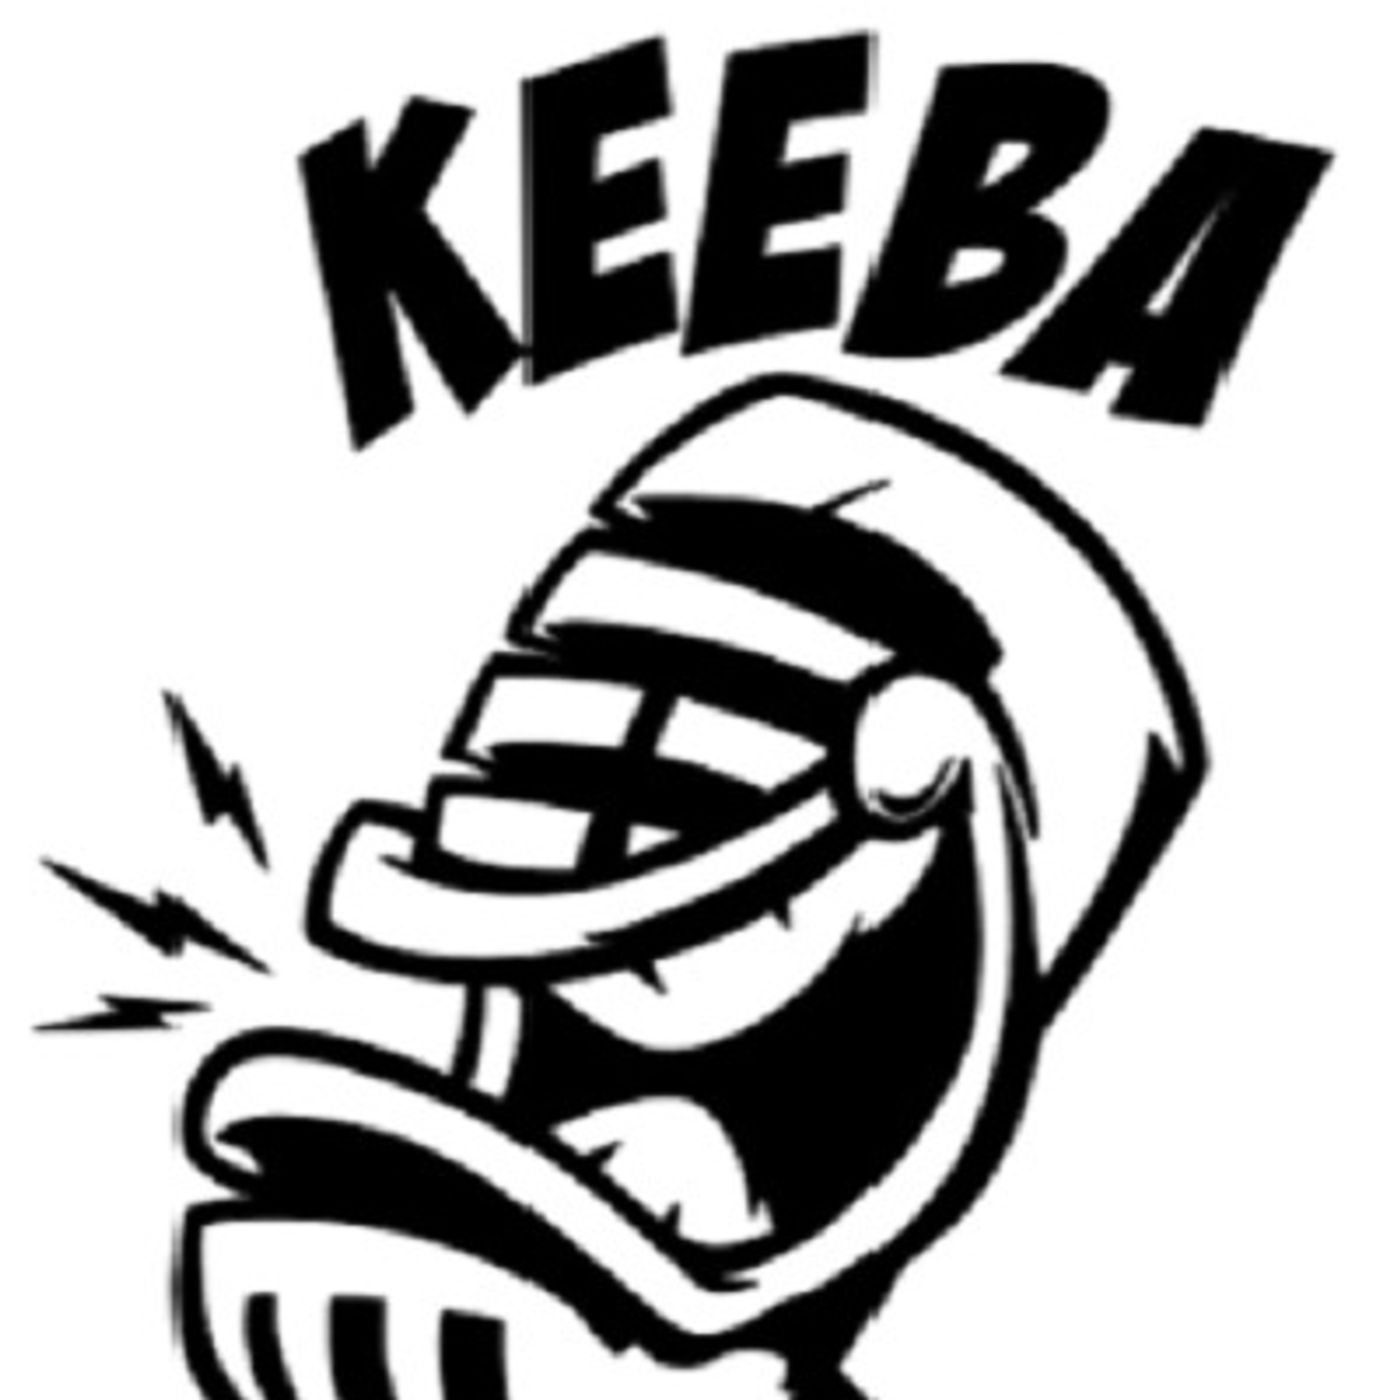 The Keeba Live Pod Cast